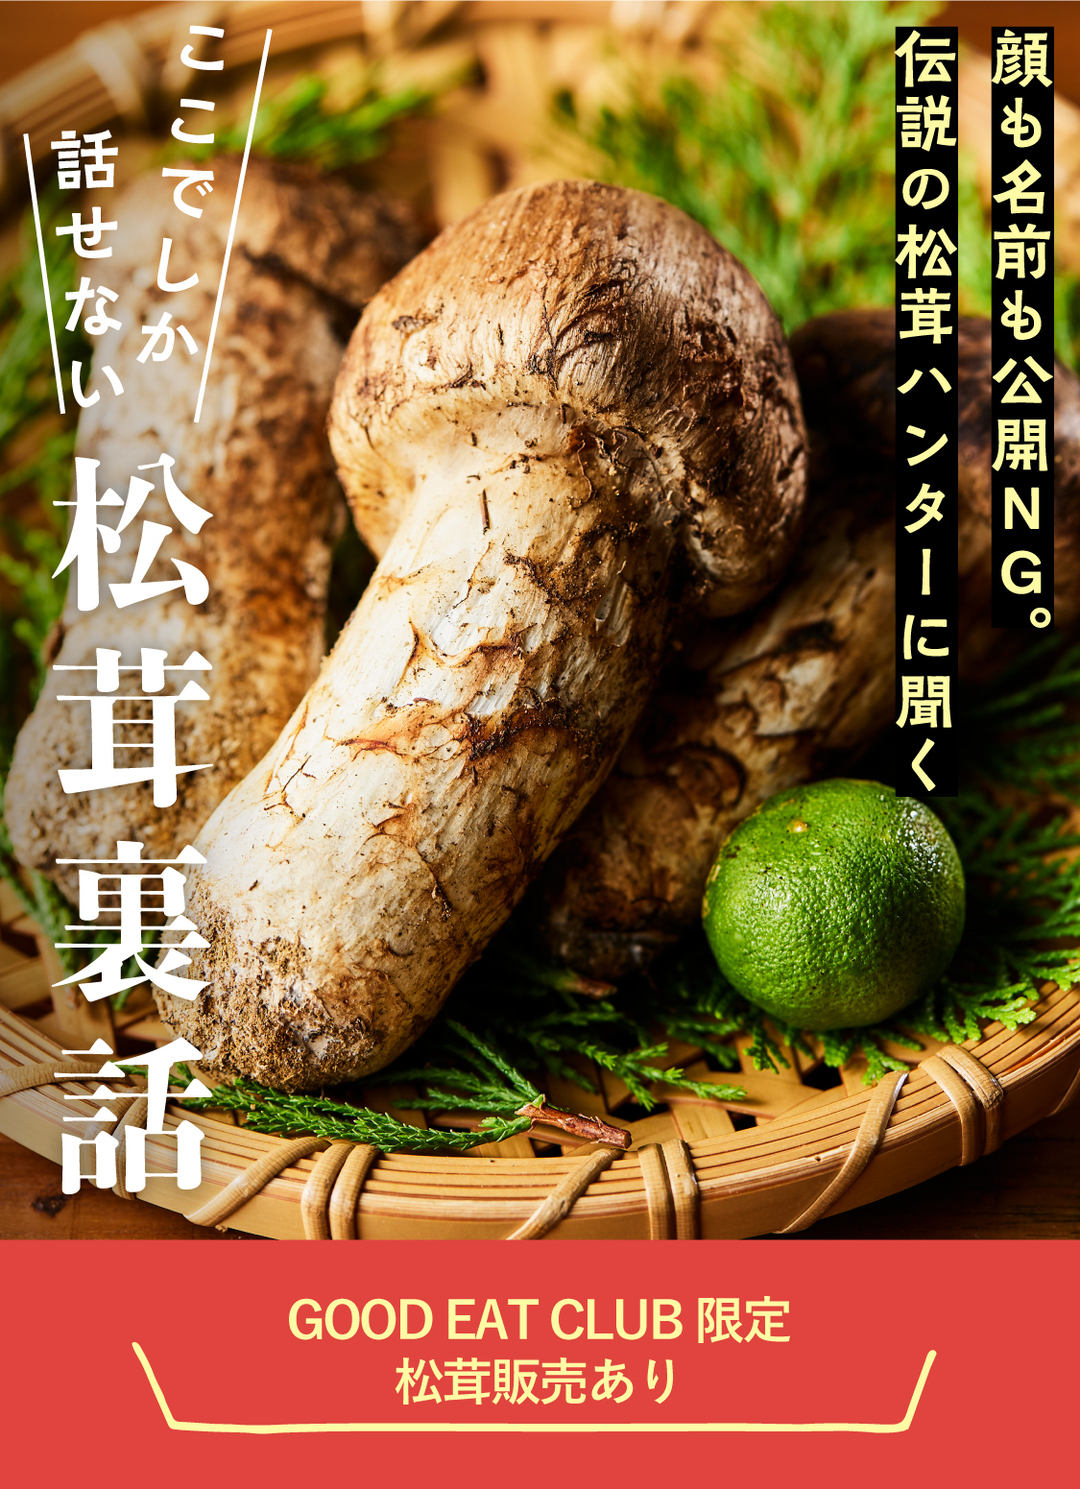 日本最高峰の南信州産の松茸を、生産地との直接契約で実現した低価格と